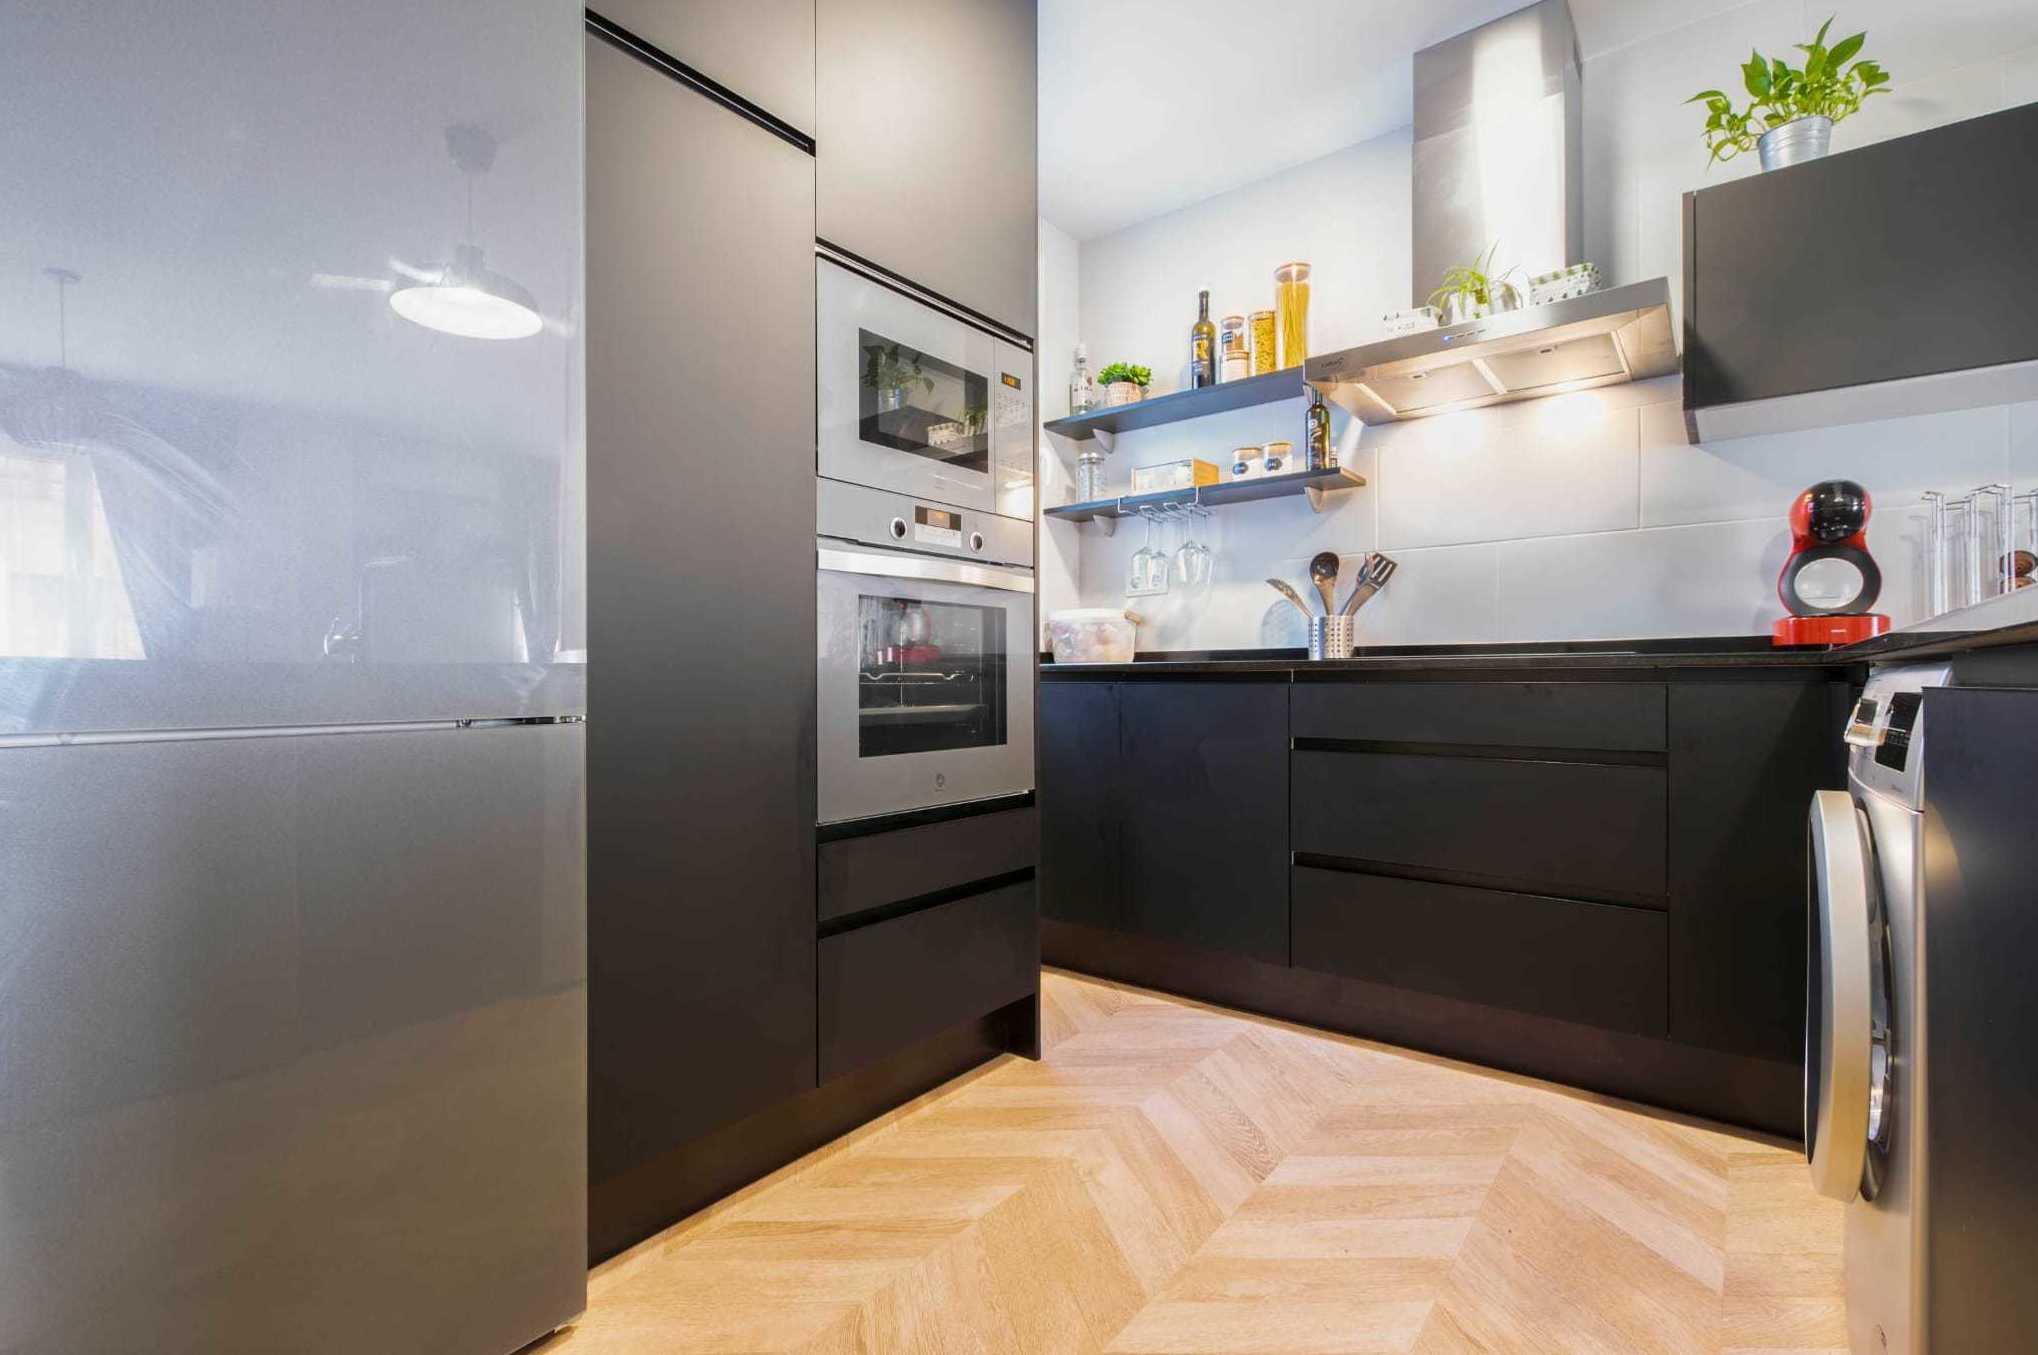 Foto 21 de Muebles de cocina en Madrid | Cocinas Castilla